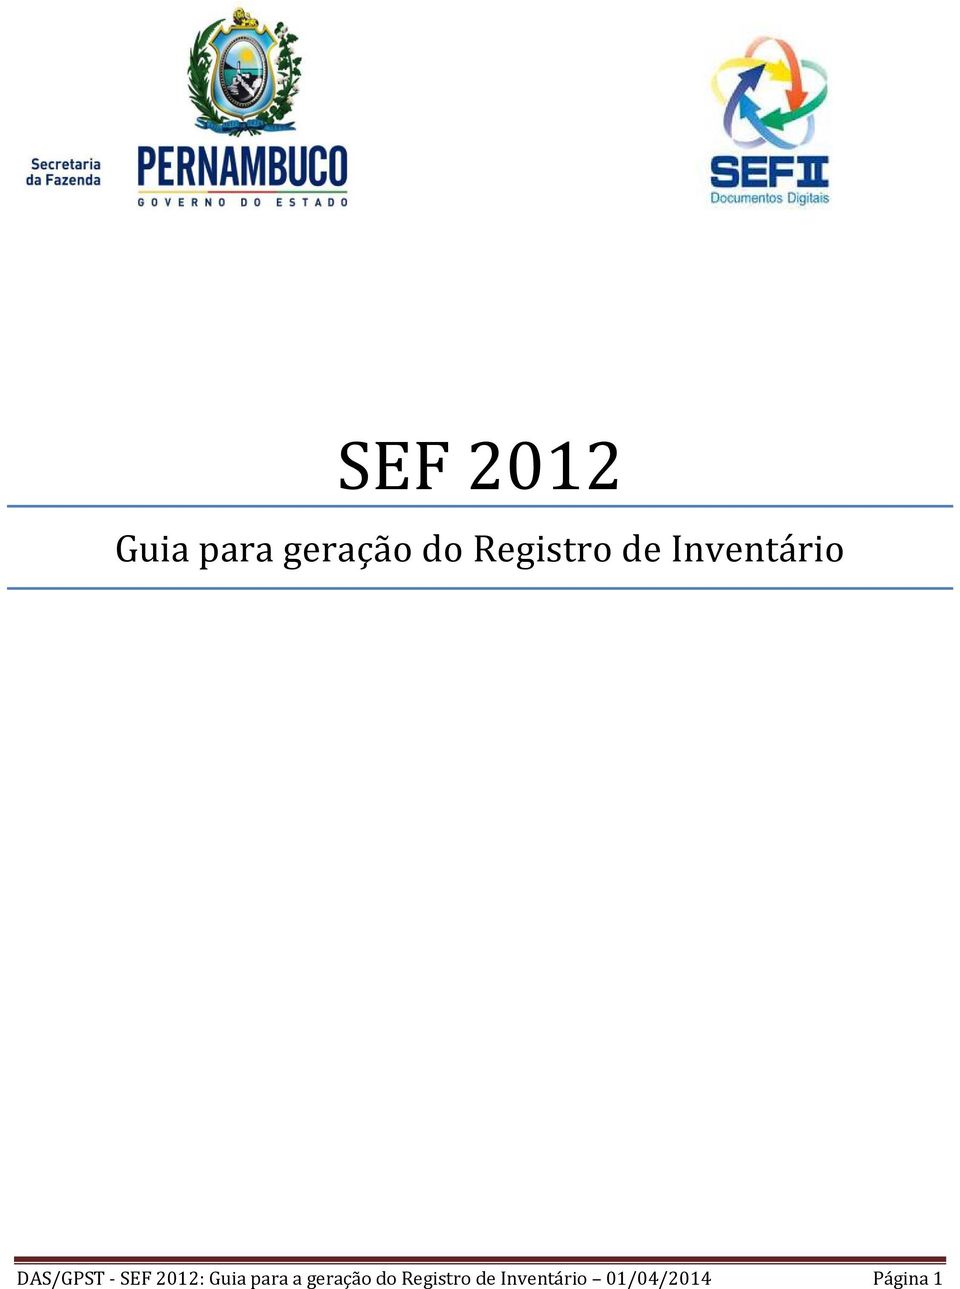 SEF 2012: Guia para a geração do